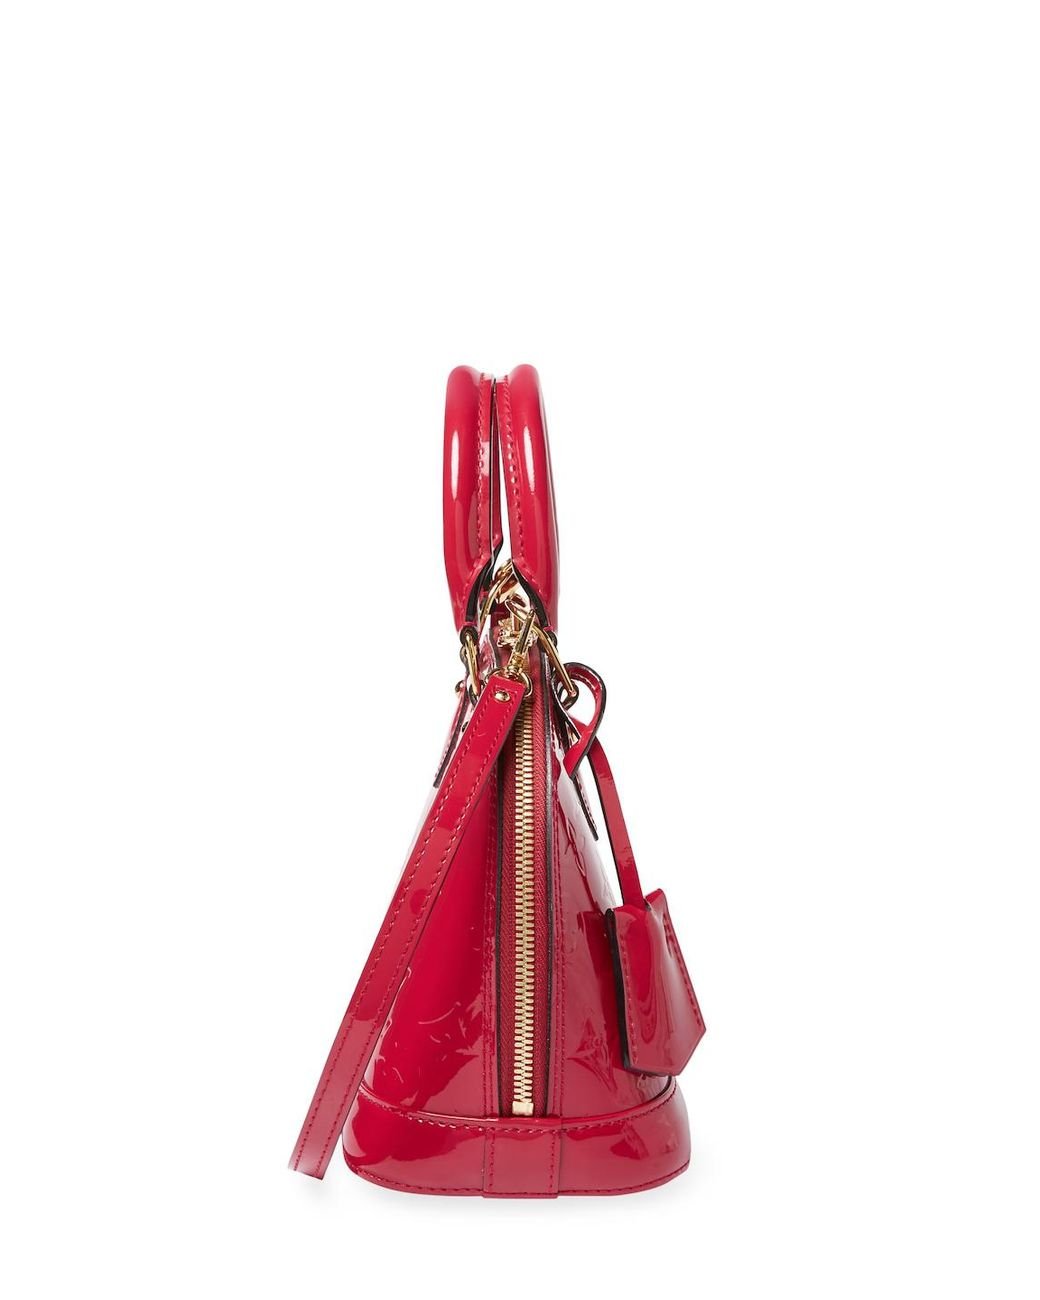 Louis Vuitton - NEW ALMA BB Raspberry Top Handle Bag w/ Jacquard Strap